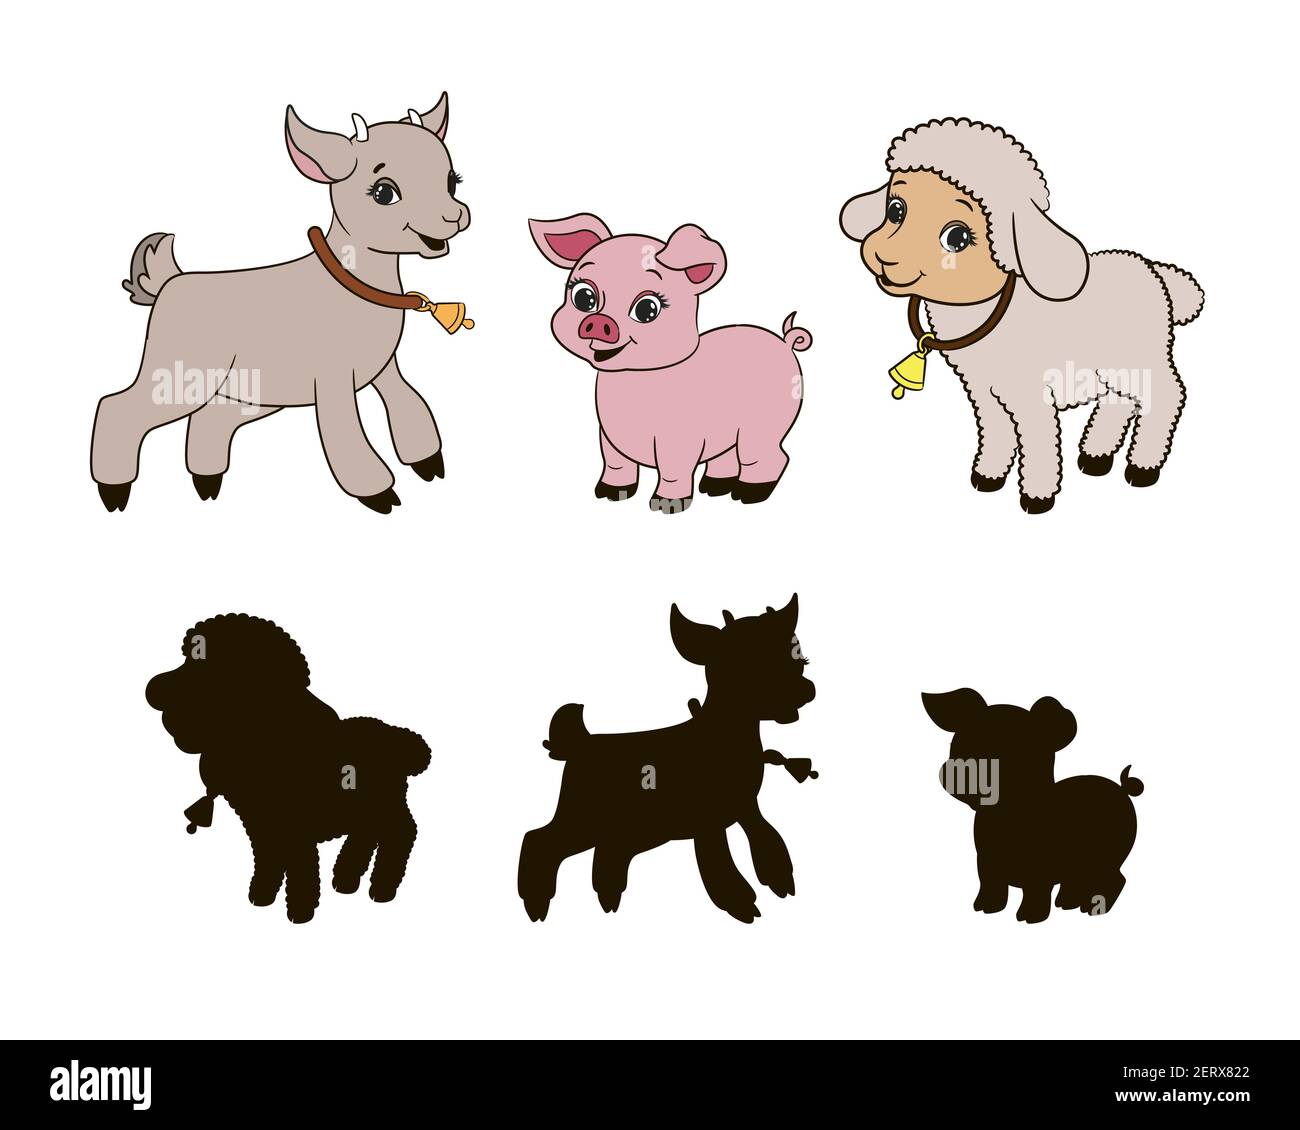 Finden Sie die richtige Schatten, Lernspiel für Kleinkinder, Cartoon-Ziege, Schwein und Lamm auf einem weißen Hintergrund, Vektor-Illustration Stock Vektor